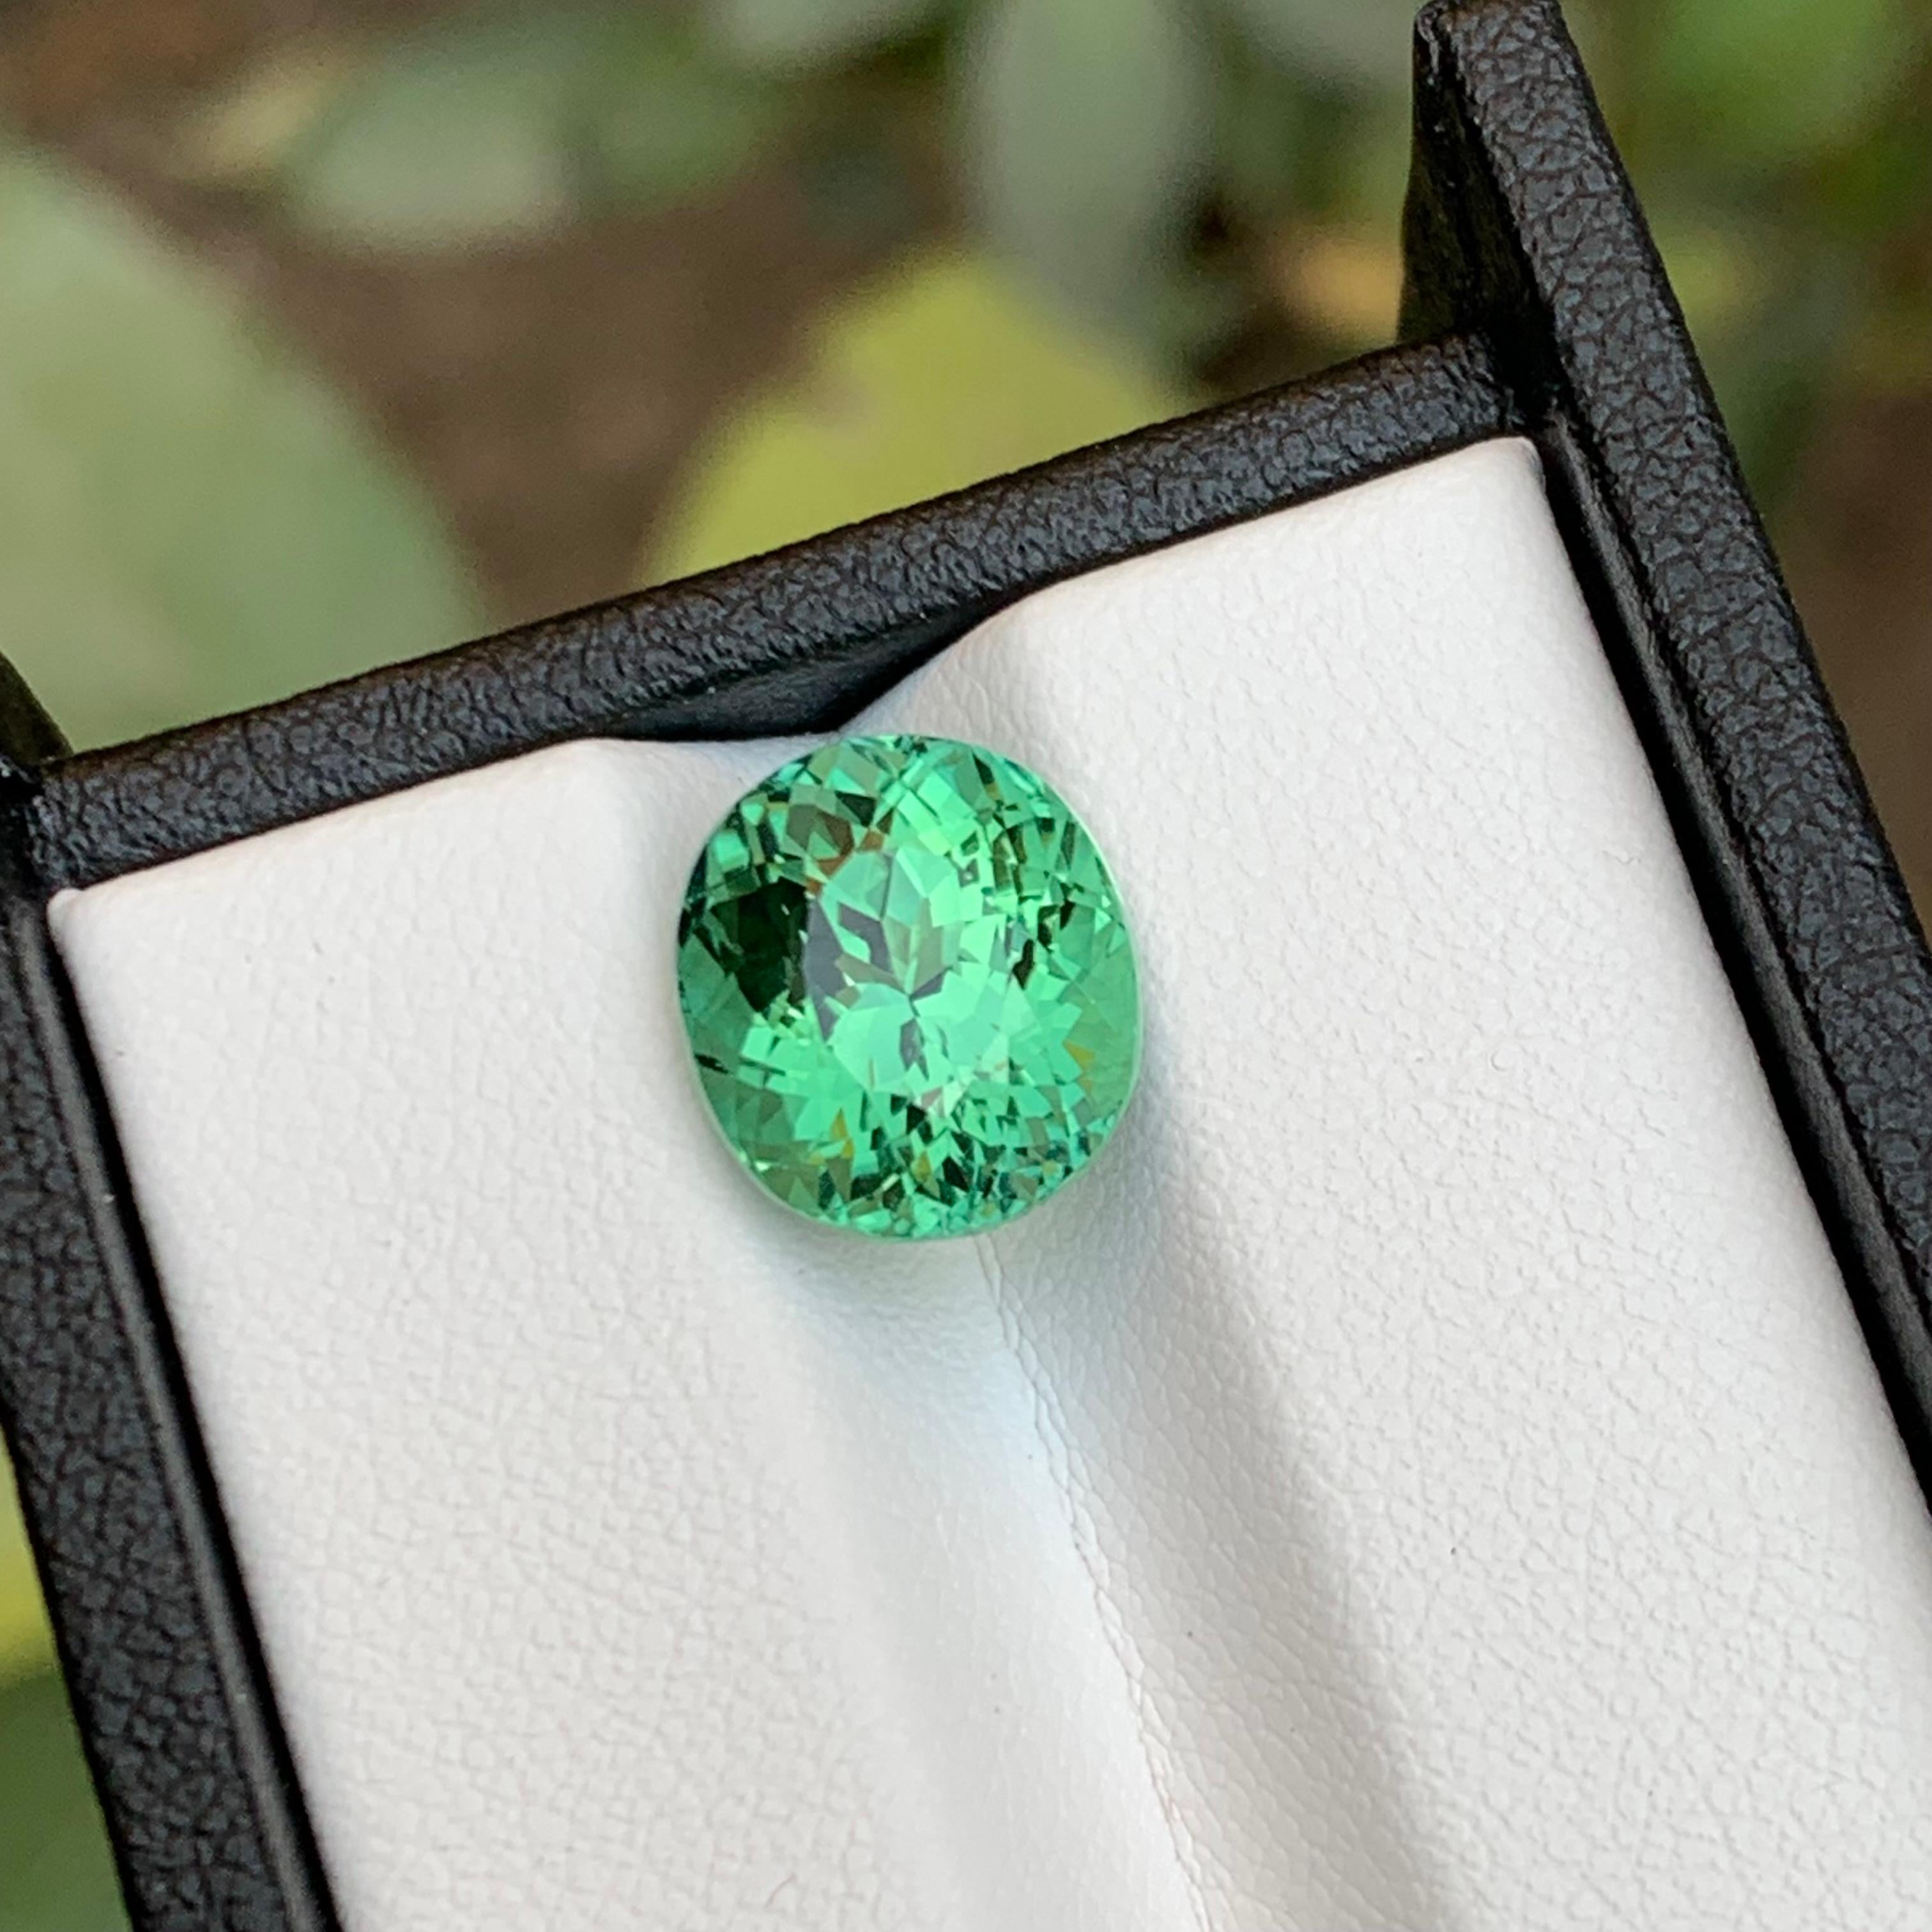 Voici notre extraordinaire tourmaline naturelle vert bleuté de 5,50 carats, taillée en coussin, en provenance d'Afghanistan. Cette pierre précieuse présente une clarté impressionnante, rehaussée par un excellent éclat, ce qui en fait un choix